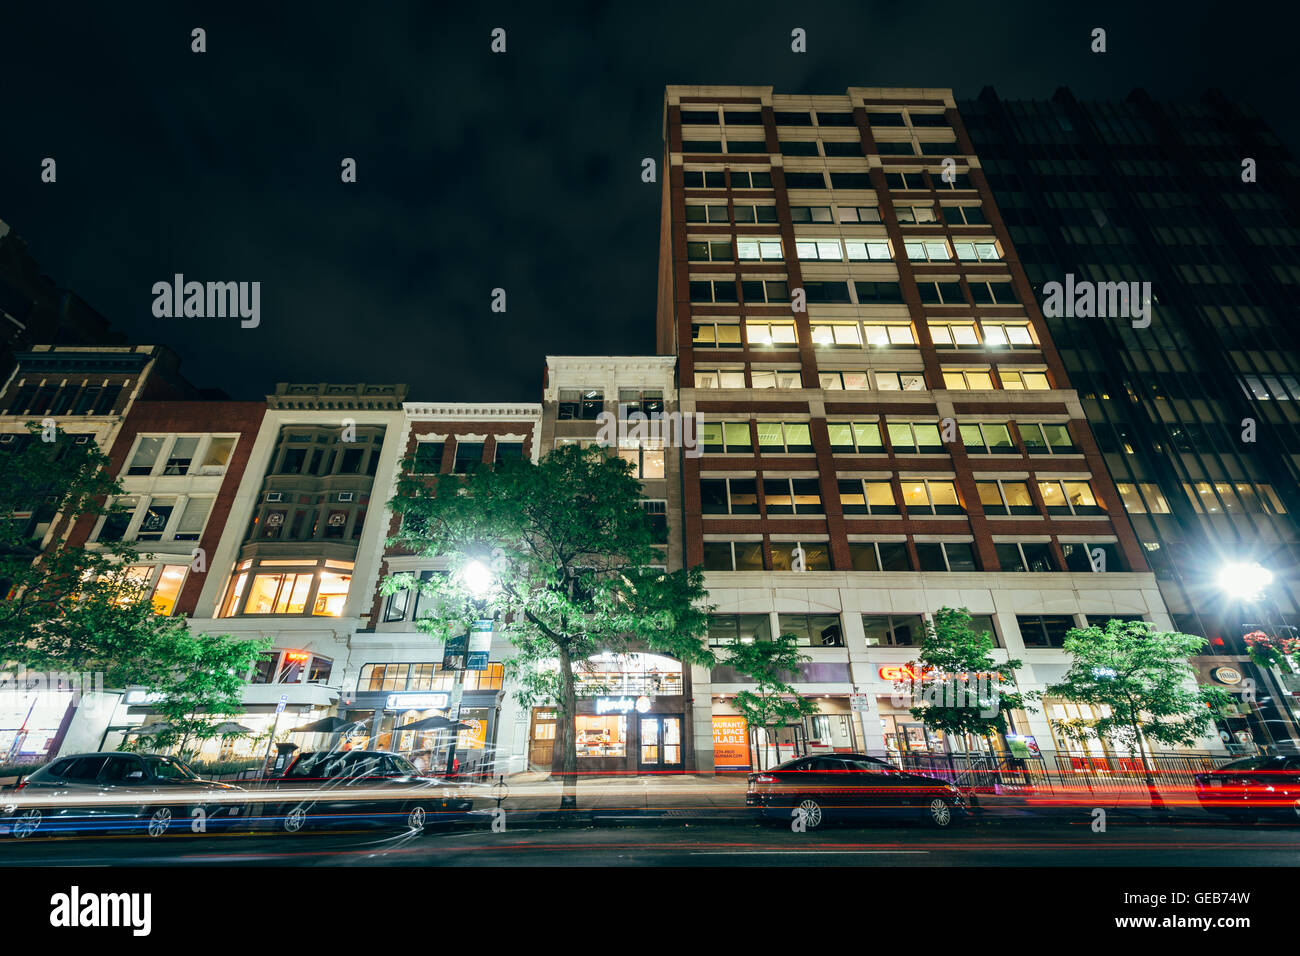 Buildings on Boylston Street at night, at Copley, in Boston, Massachusetts. Stock Photo